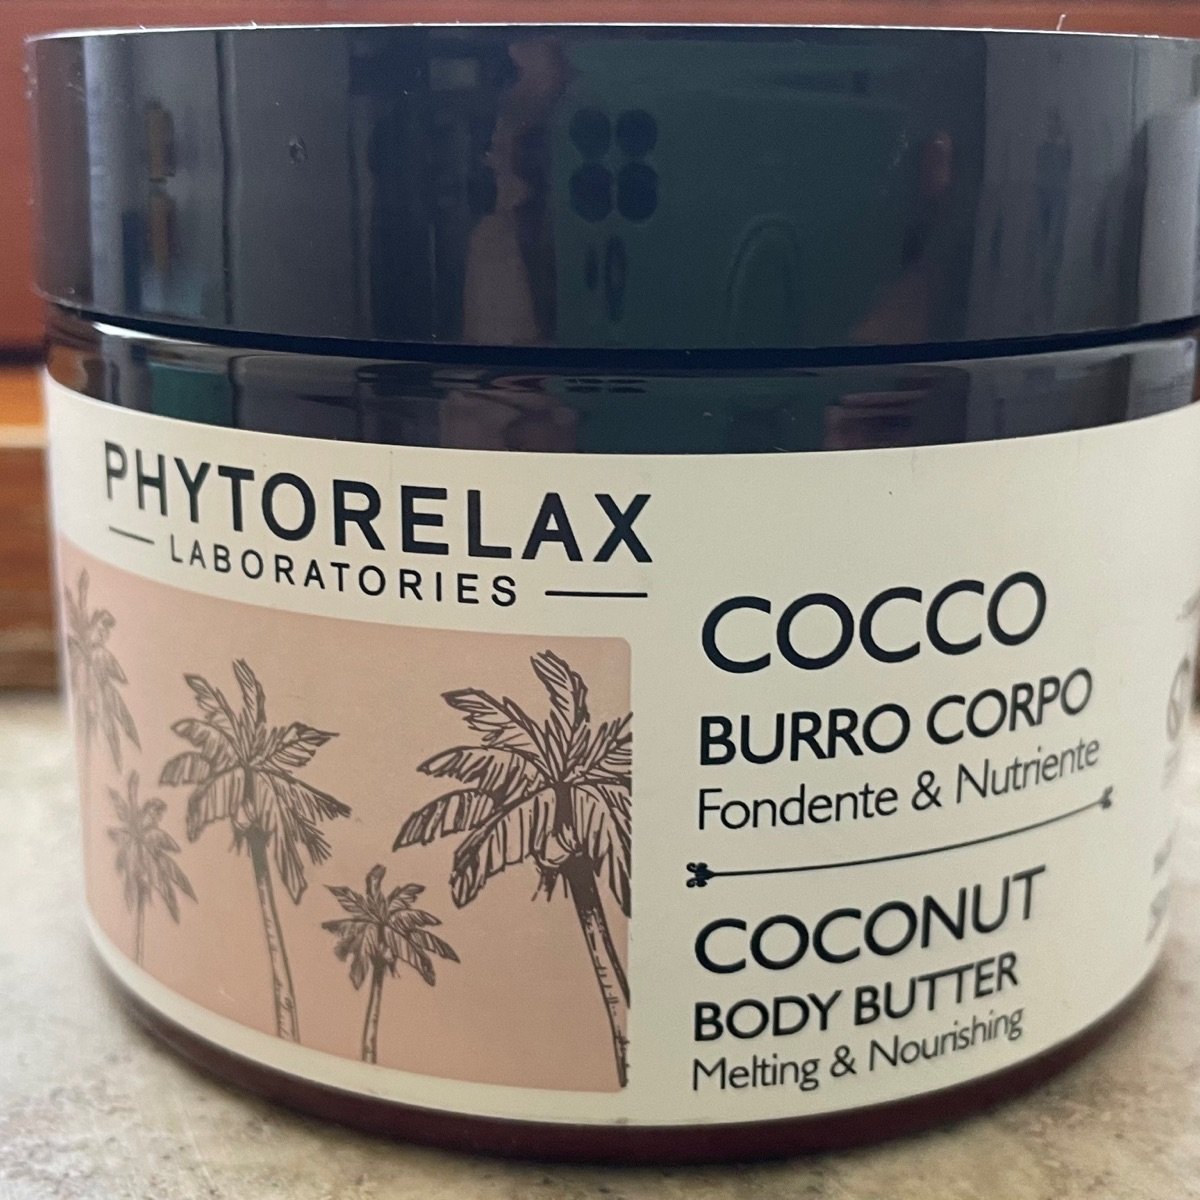 Phytorelax Cocco Burro Corpo Reviews | abillion